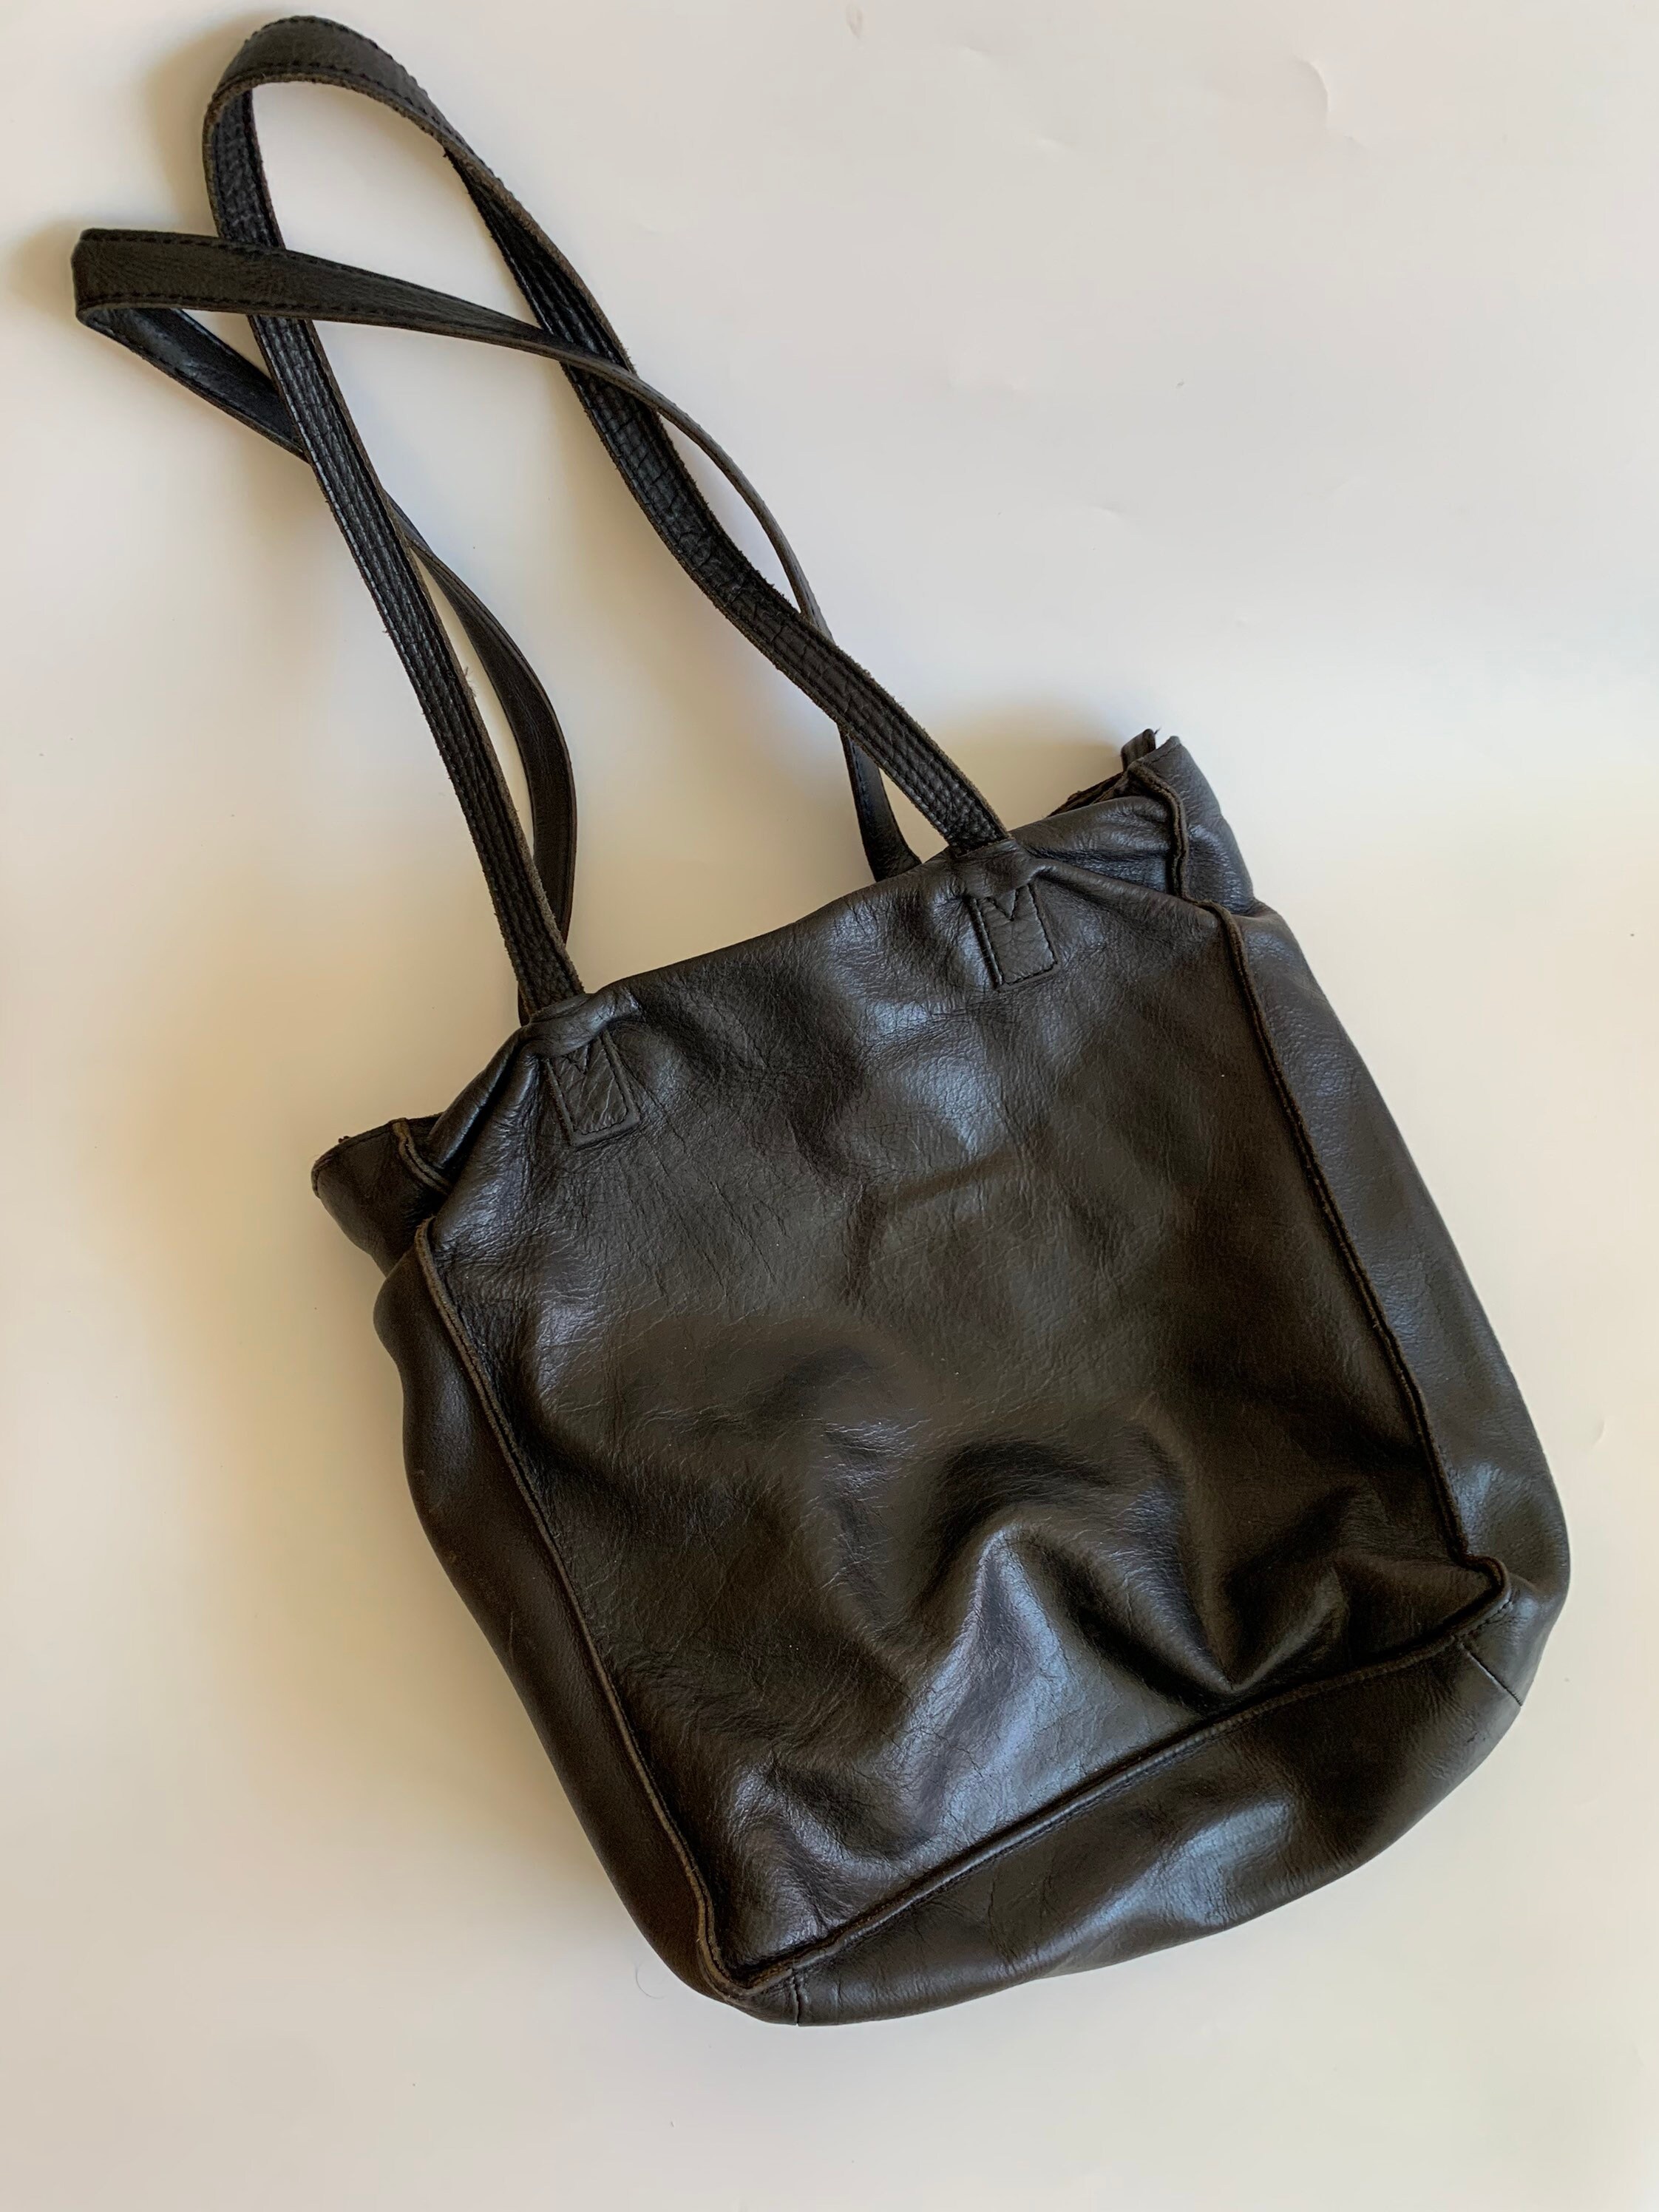 New '90s crackled leather shoulder bag - Black